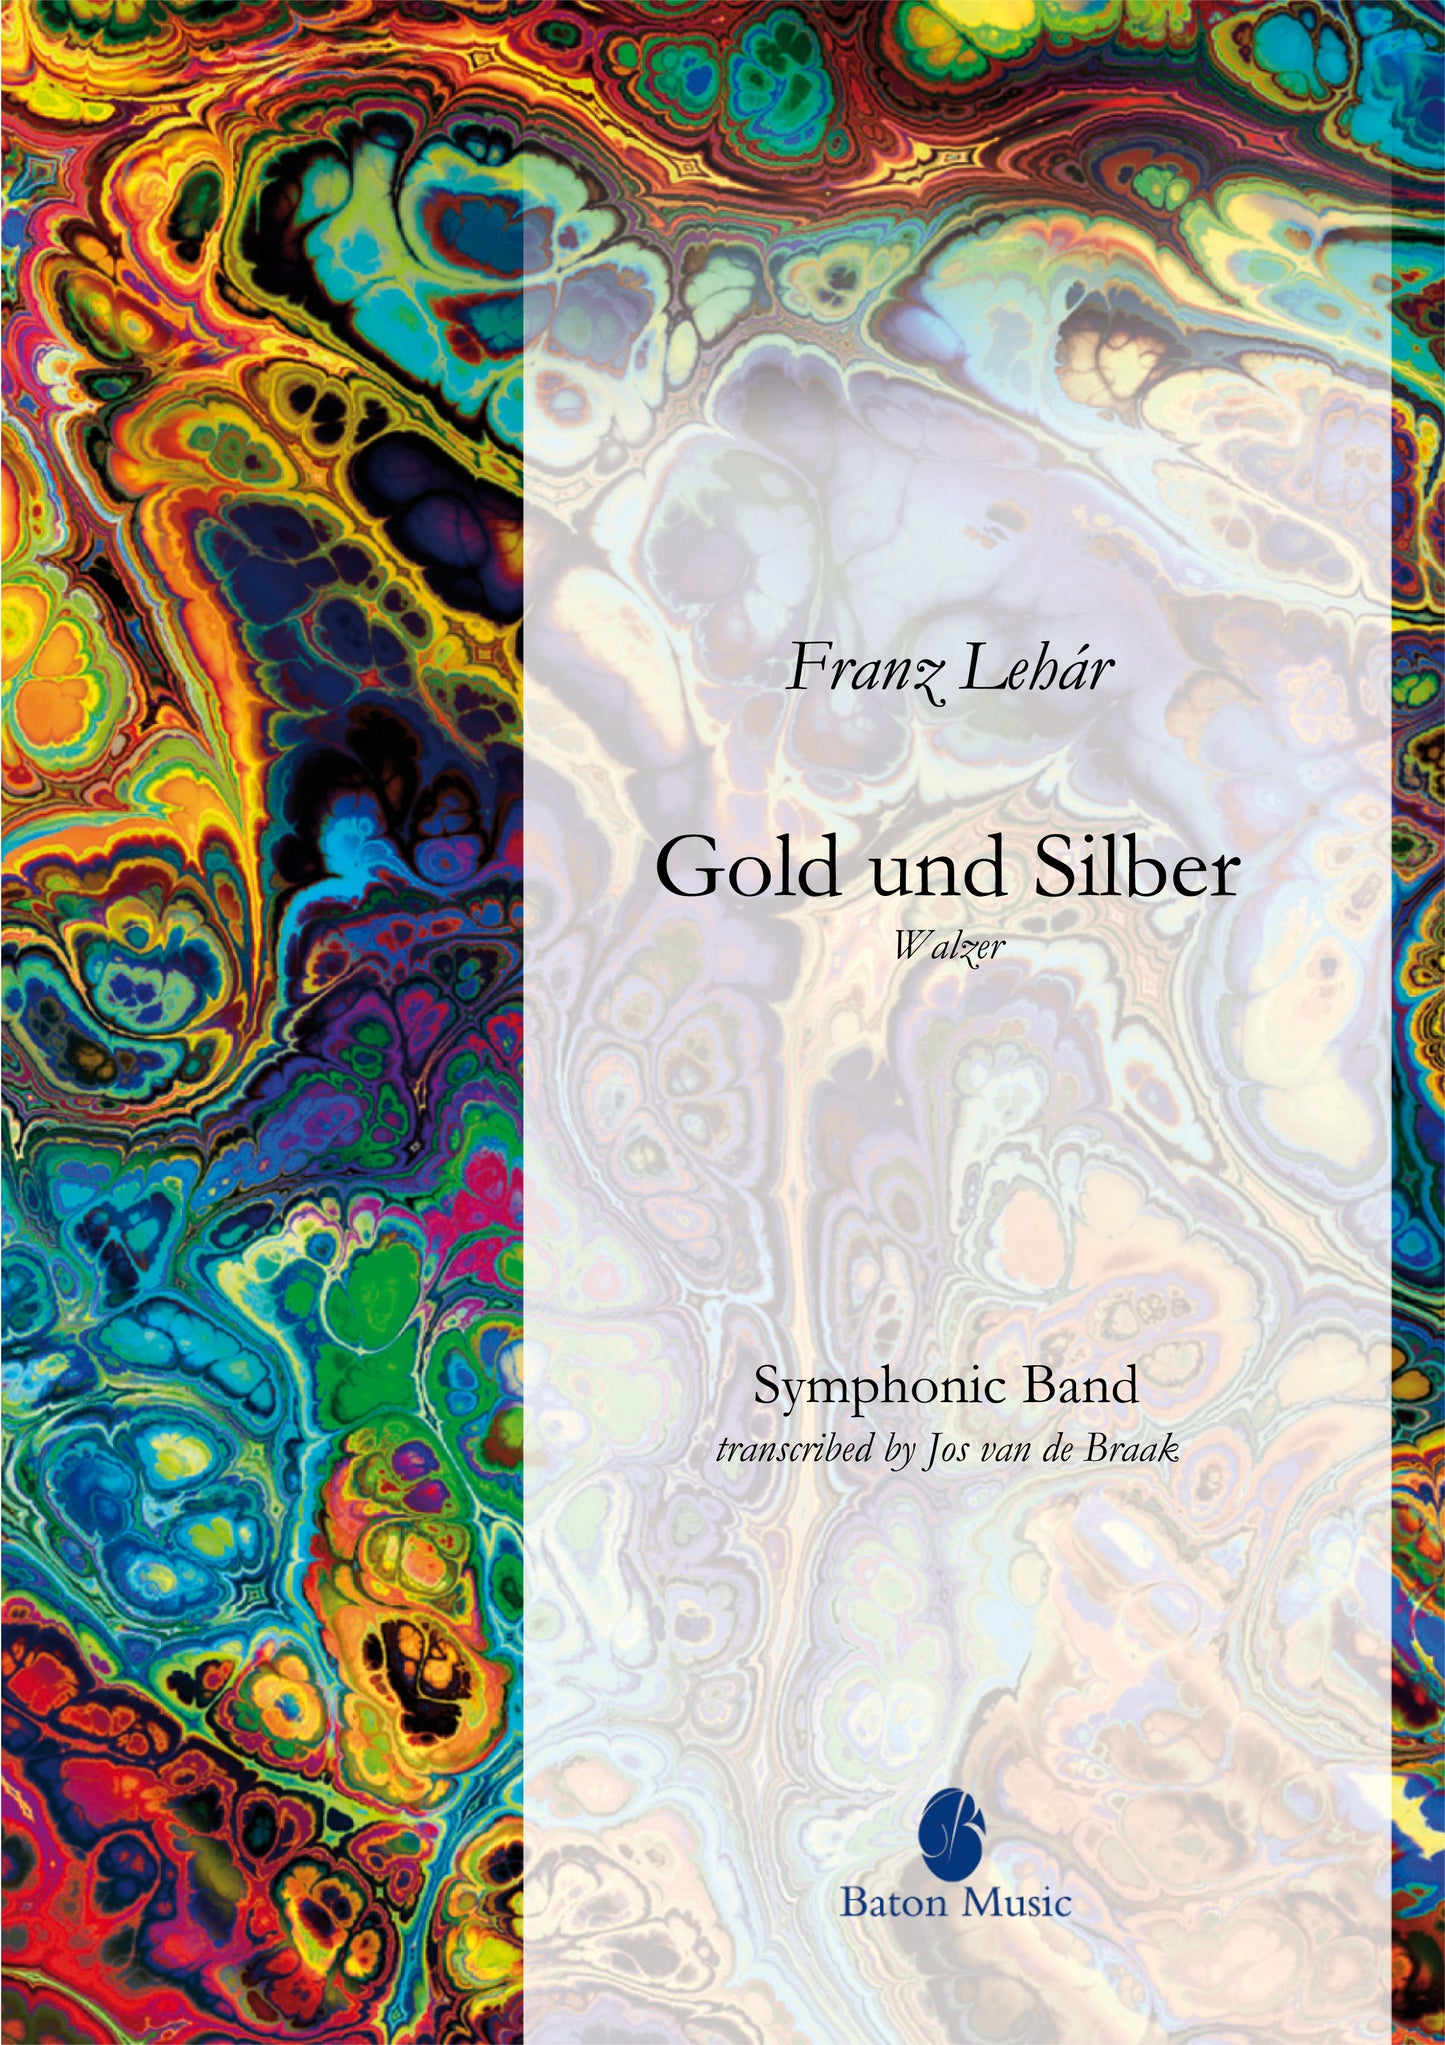 Gold and Silver (Waltz) - Franz Lehár